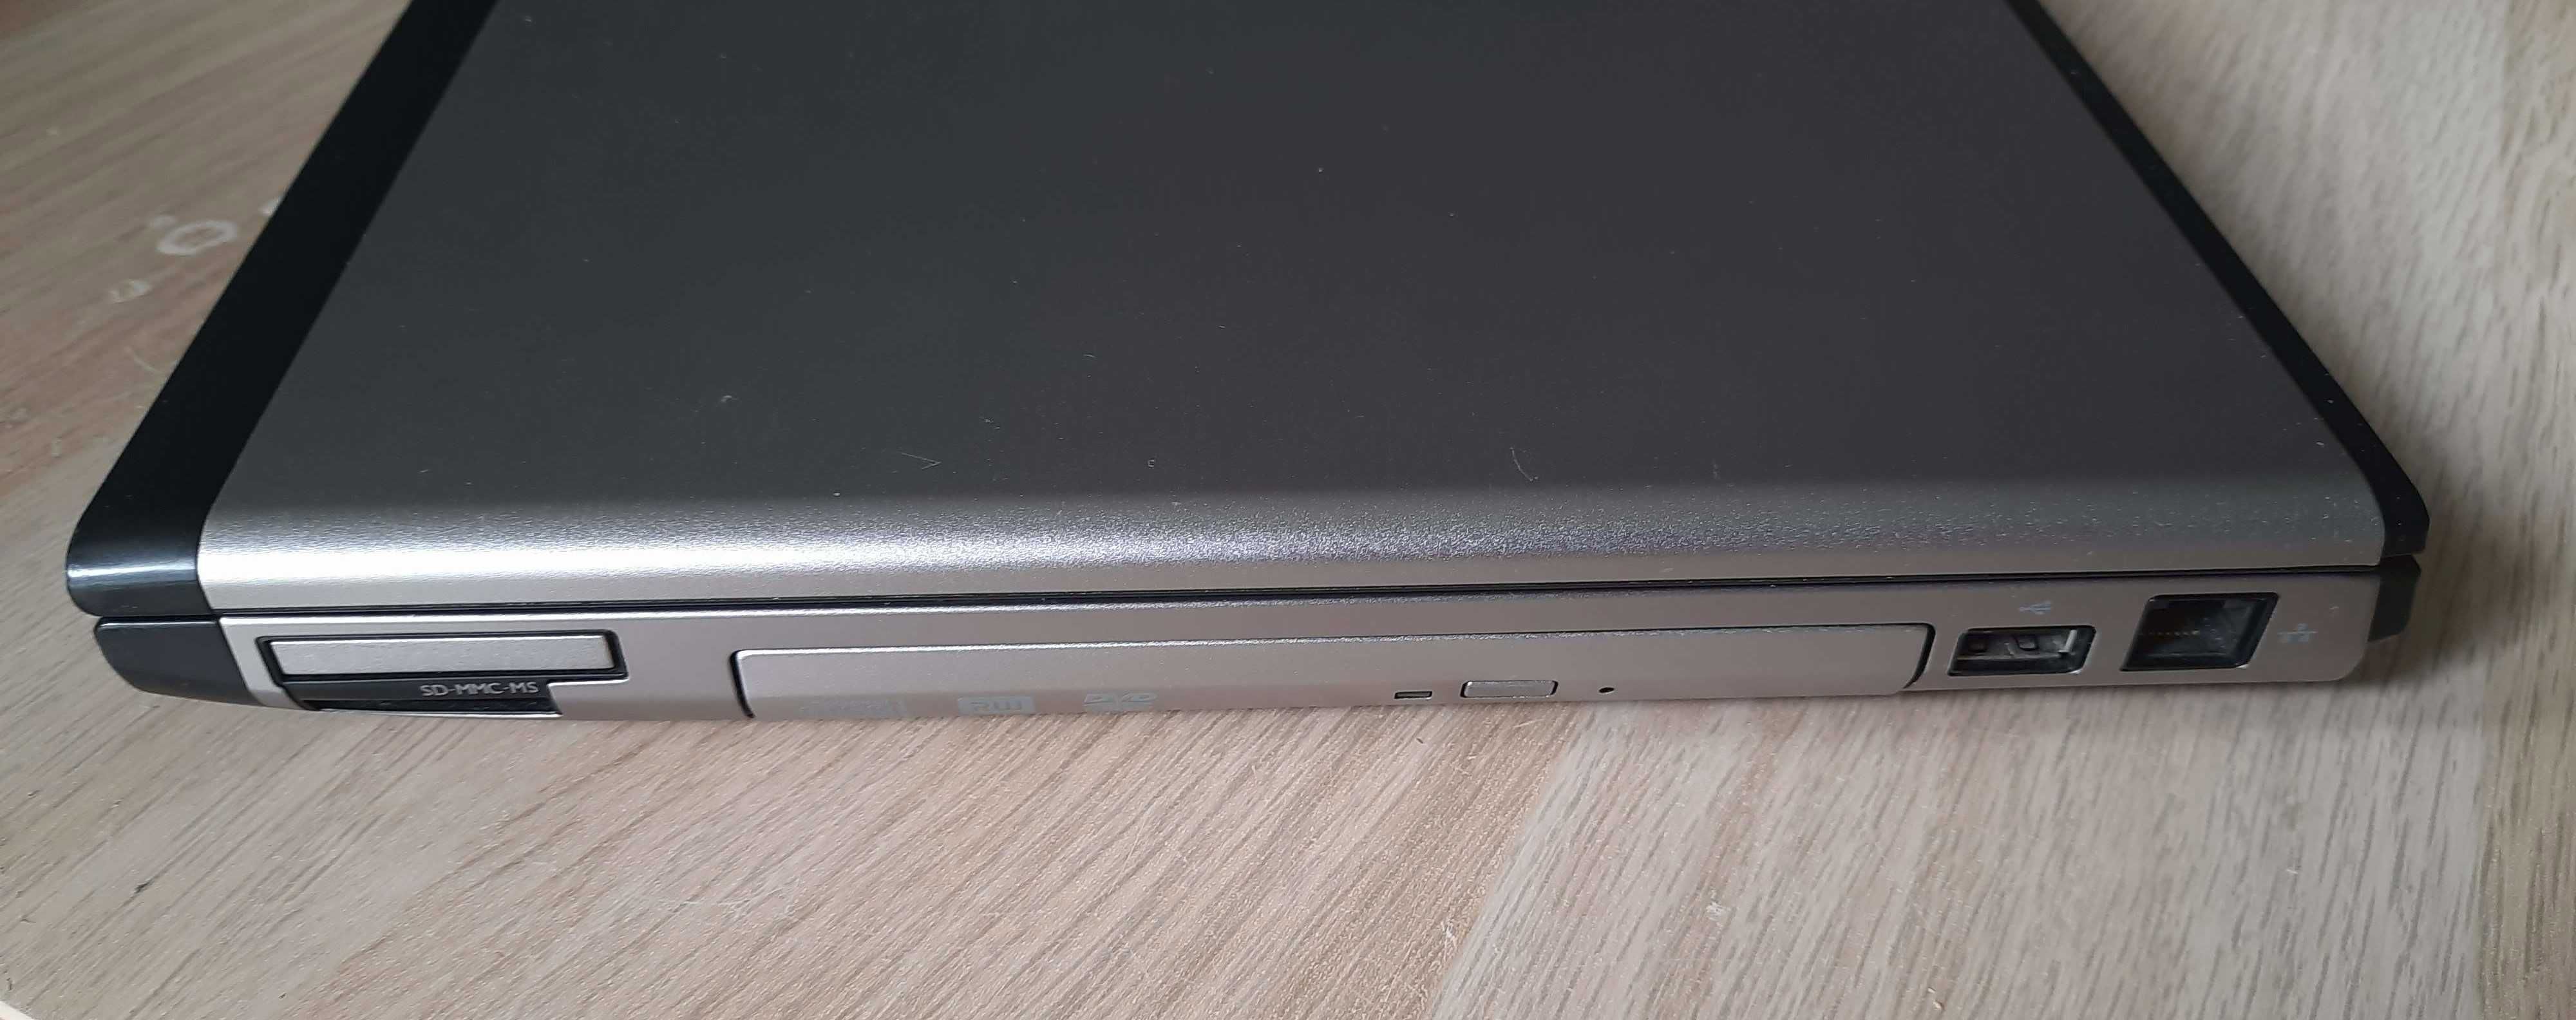 Laptop Dell Vostro 3500 (i5, SSD 256GB, nowa bateria)